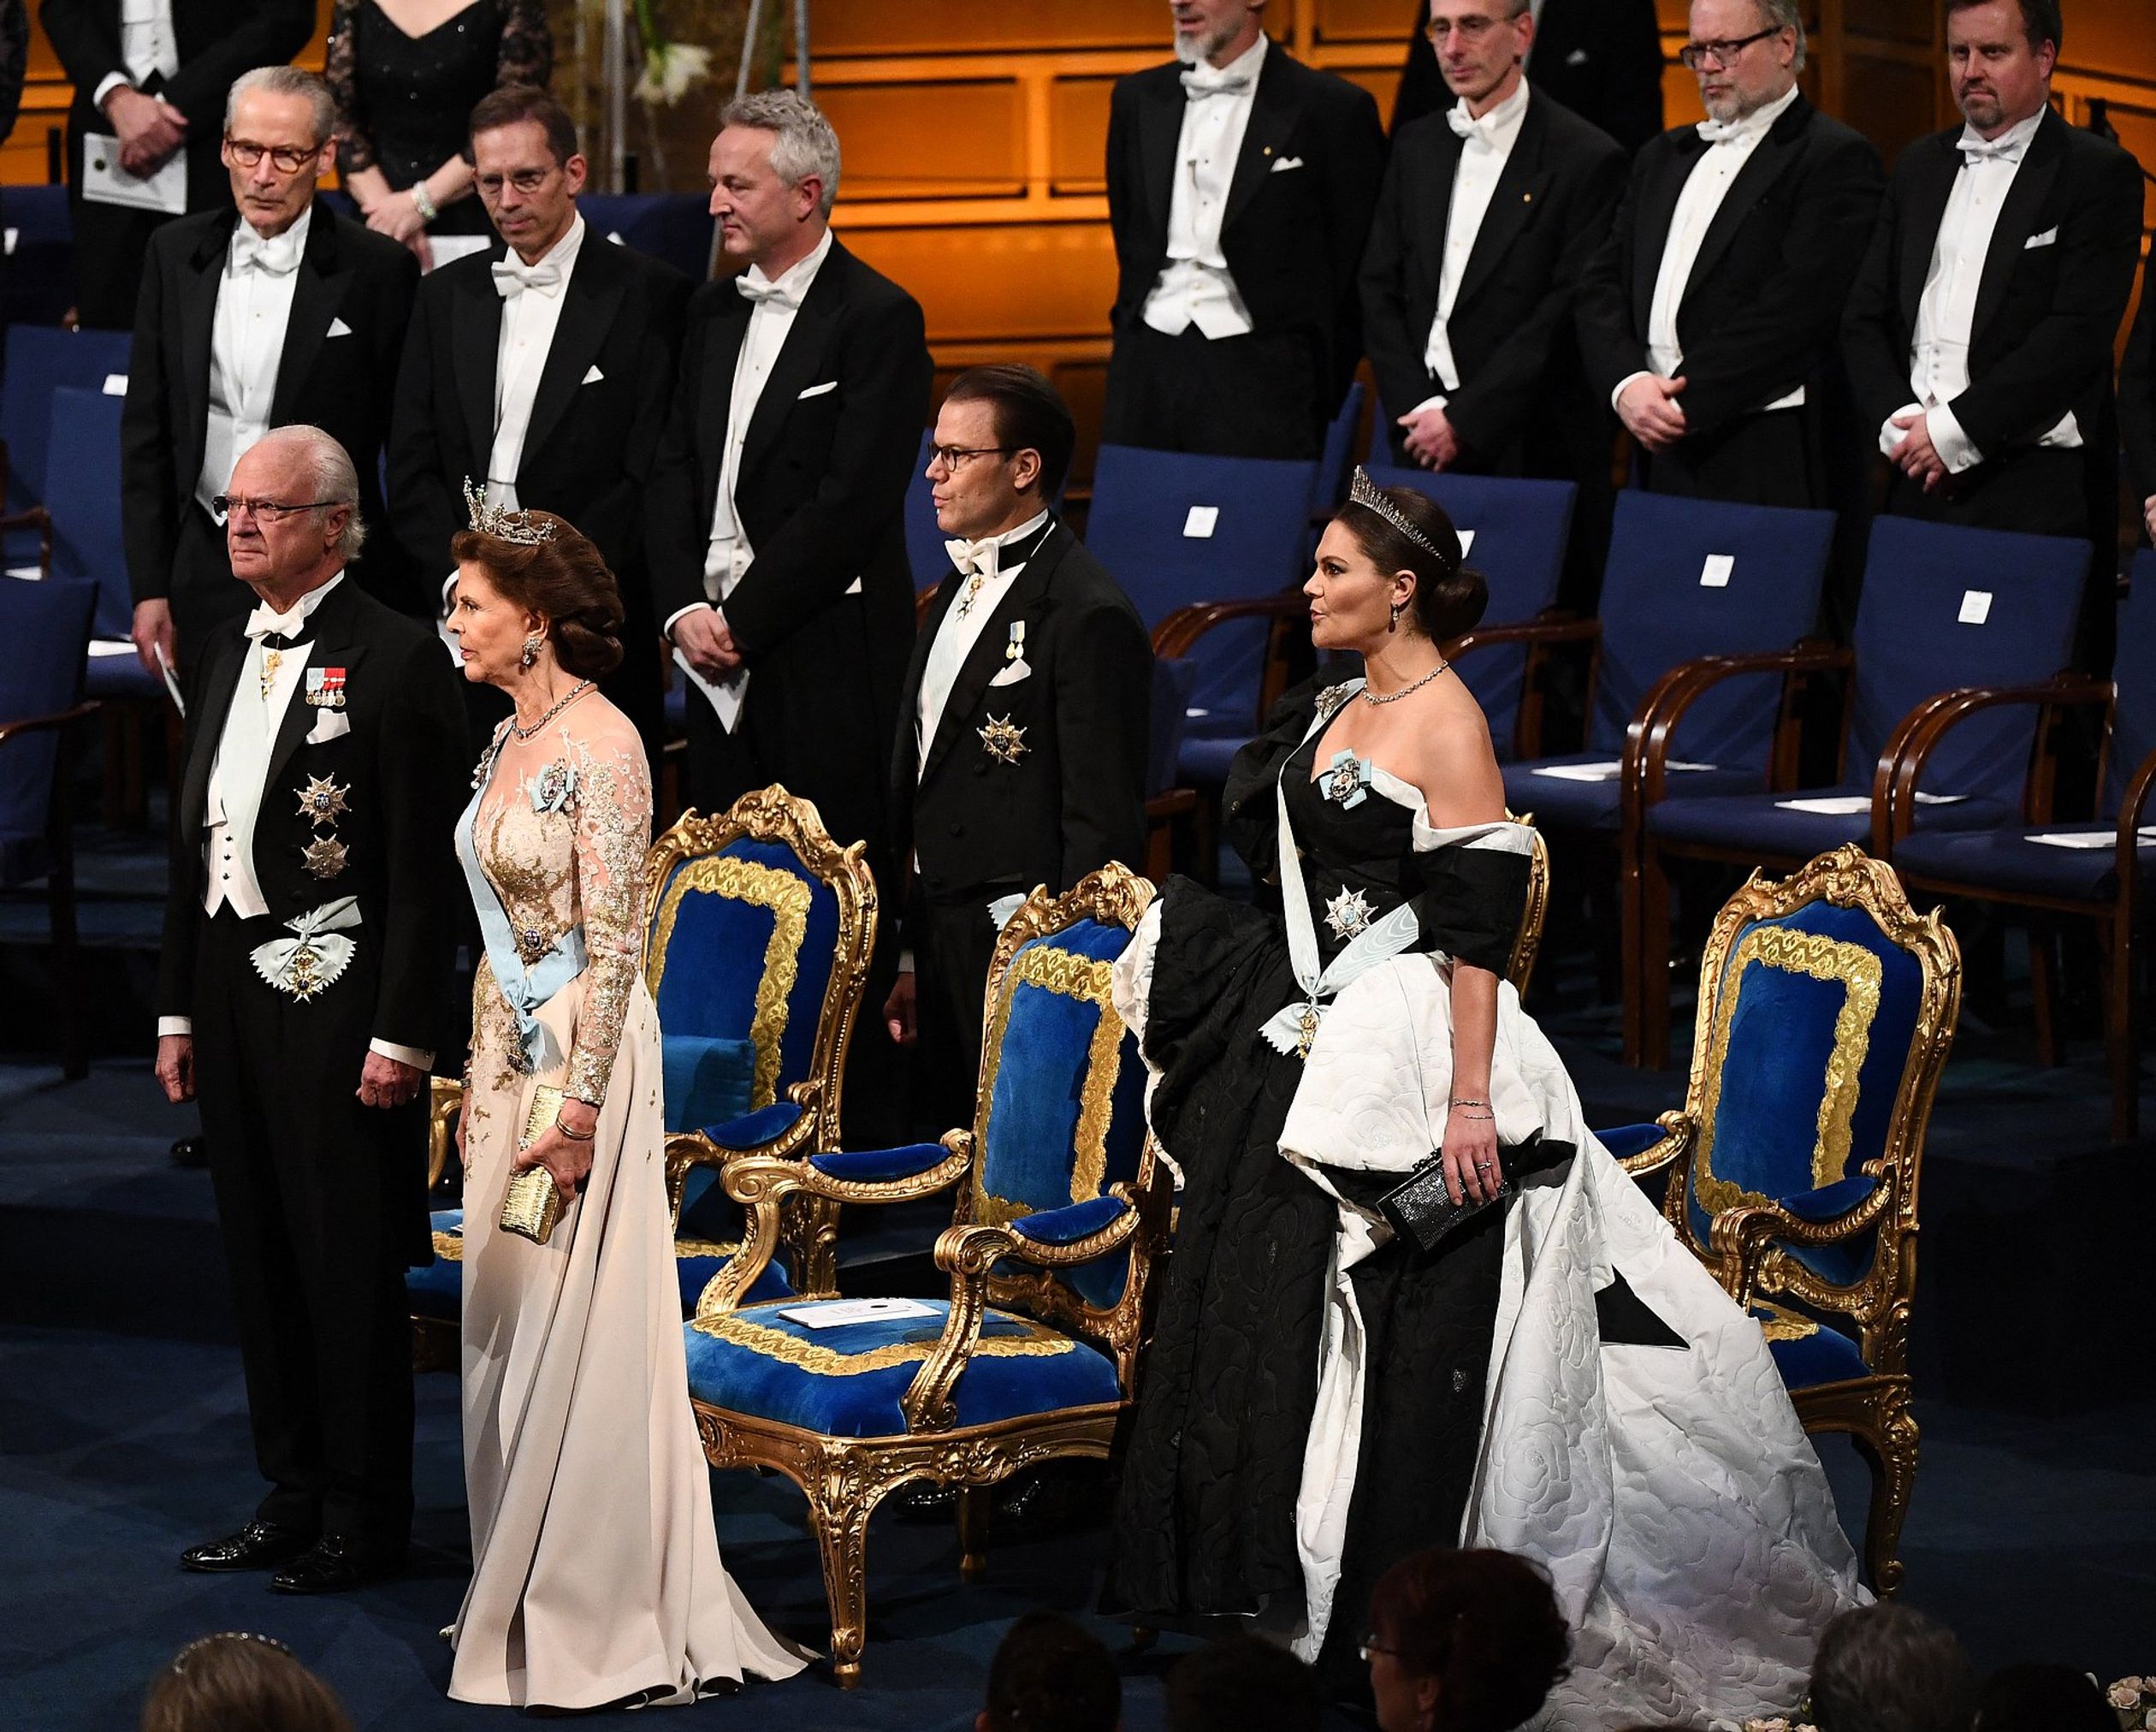 Victoria op de Nobelprijs uitreiking in 2019.